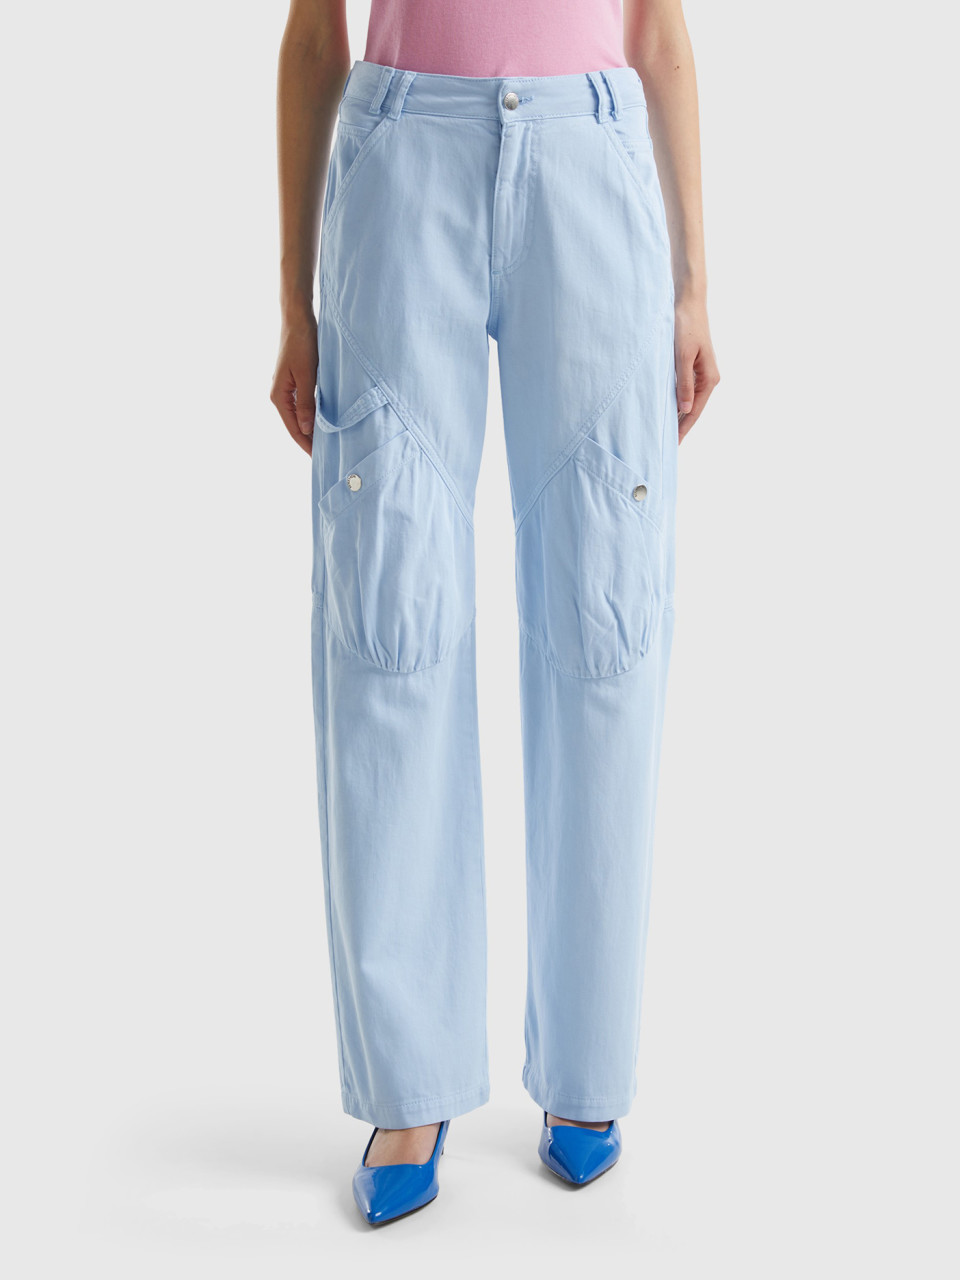 Benetton, Cargo Trousers In Cotton, Sky Blue, Women